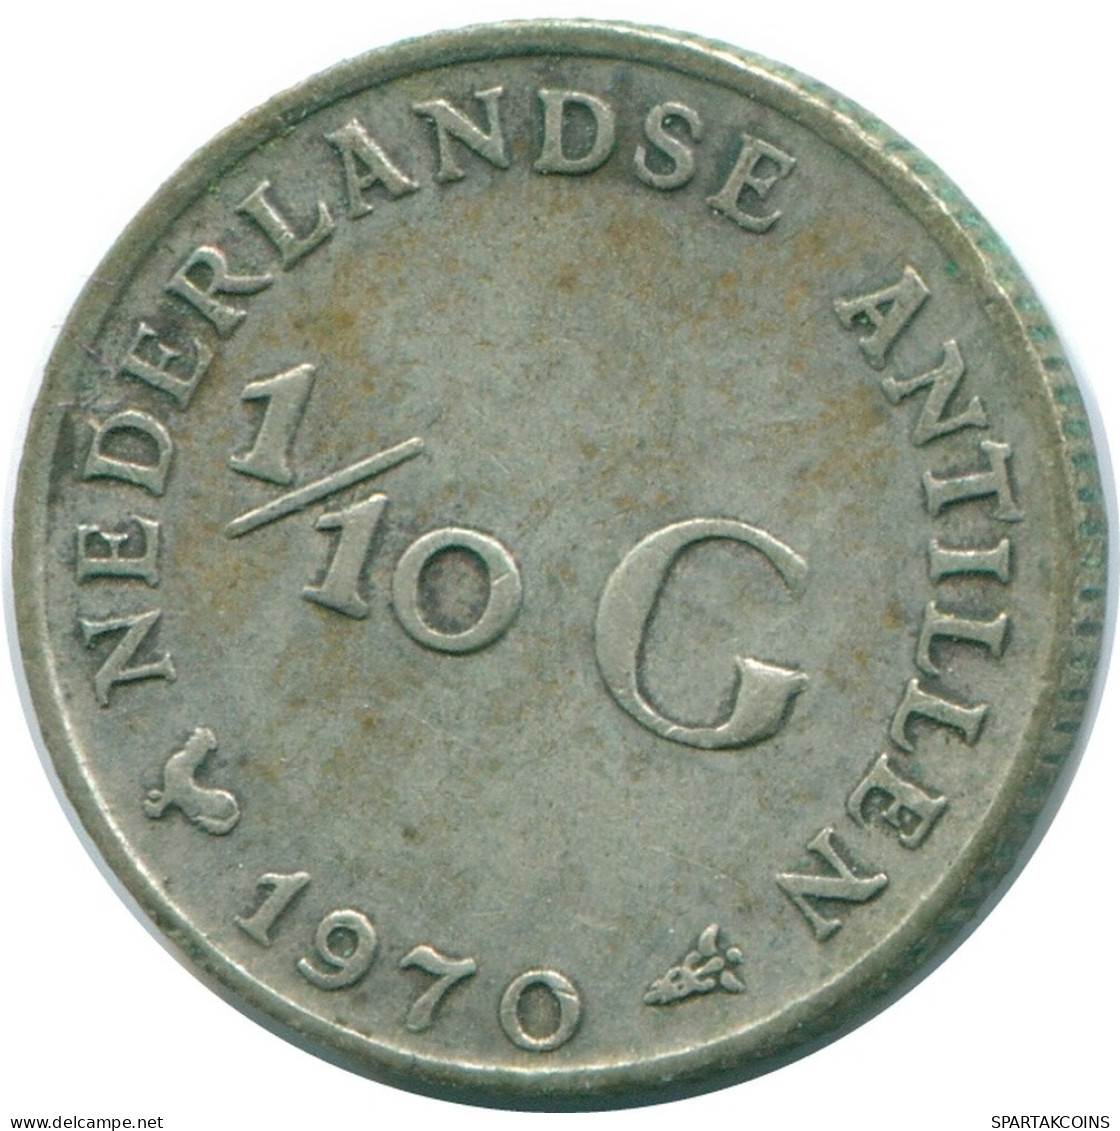 1/10 GULDEN 1970 NIEDERLÄNDISCHE ANTILLEN SILBER Koloniale Münze #NL13030.3.D.A - Antille Olandesi